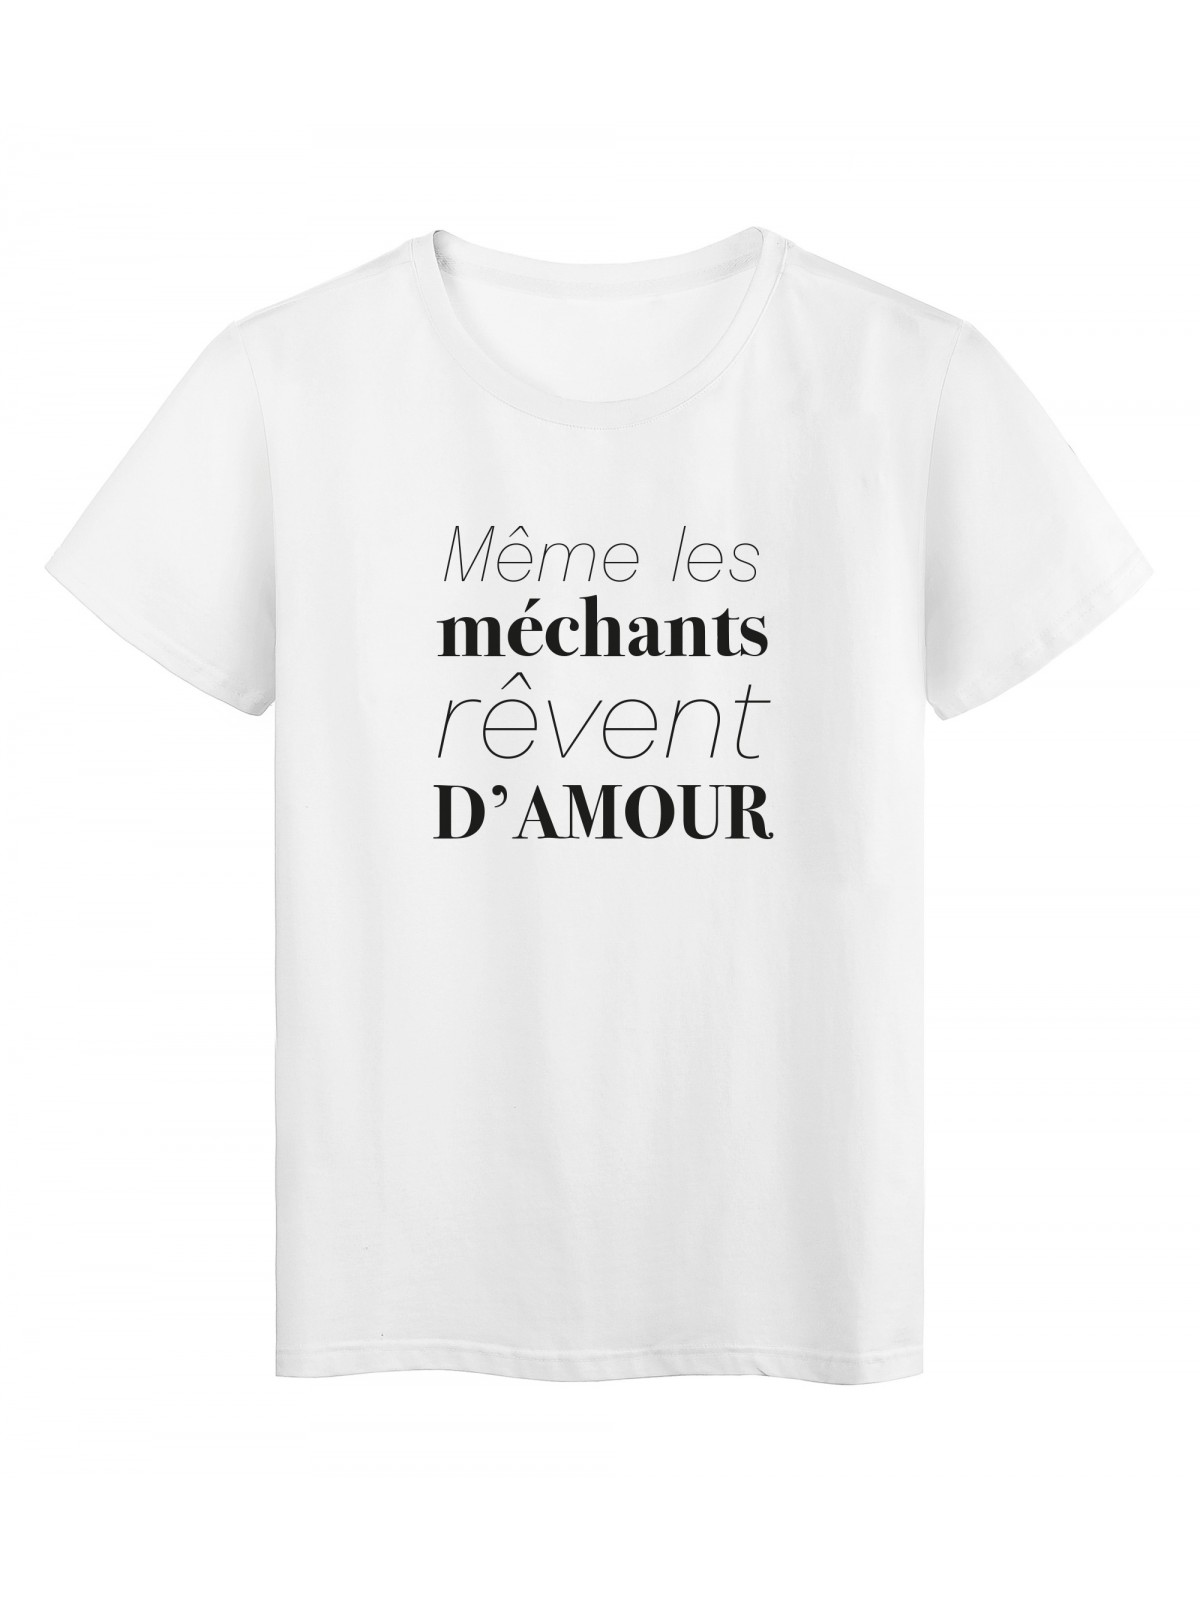 T-Shirt imprimÃ© citation humour meme les mechants reves d'amour